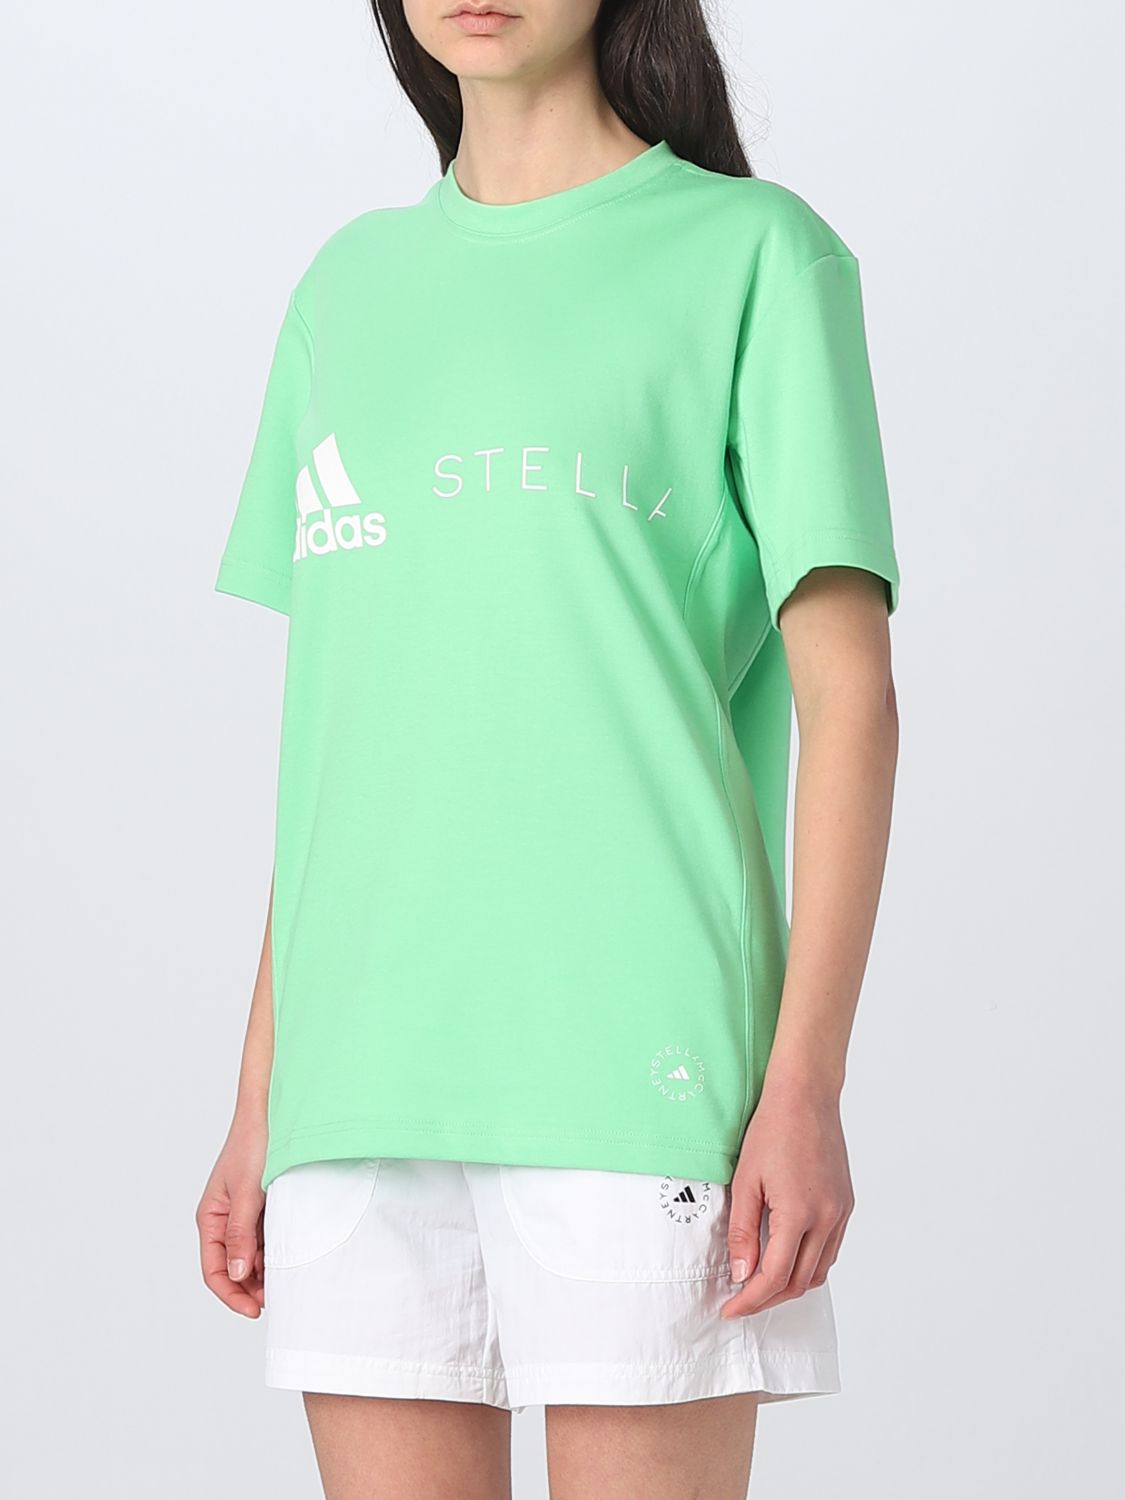 Desarmado después del colegio Embrión ADIDAS BY STELLA MCCARTNEY: t-shirt for woman - Green | Adidas By Stella  Mccartney t-shirt IB2300 online on GIGLIO.COM